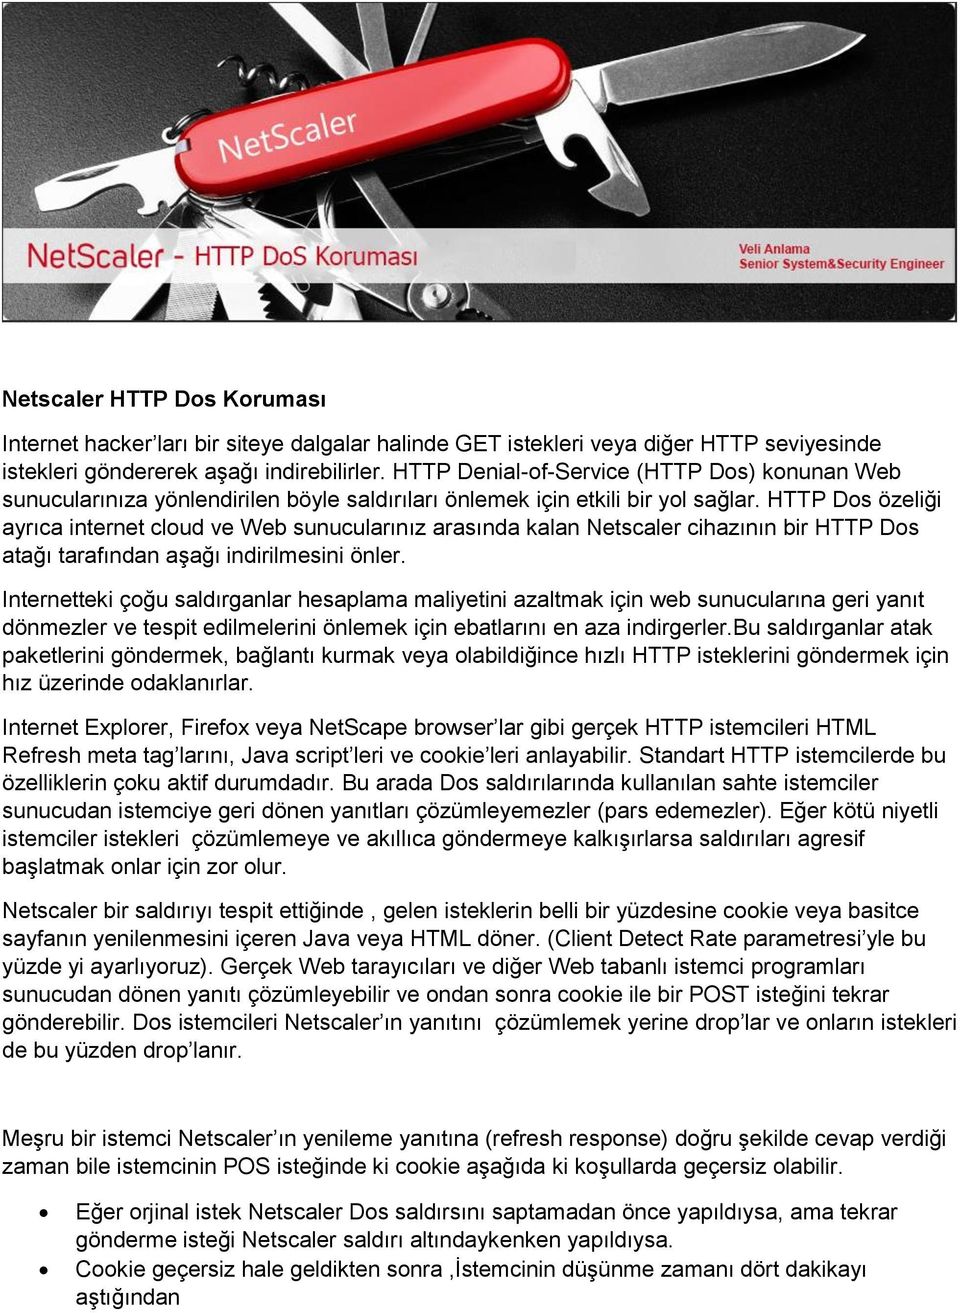 HTTP Dos özeliği ayrıca internet cloud ve Web sunucularınız arasında kalan Netscaler cihazının bir HTTP Dos atağı tarafından aşağı indirilmesini önler.